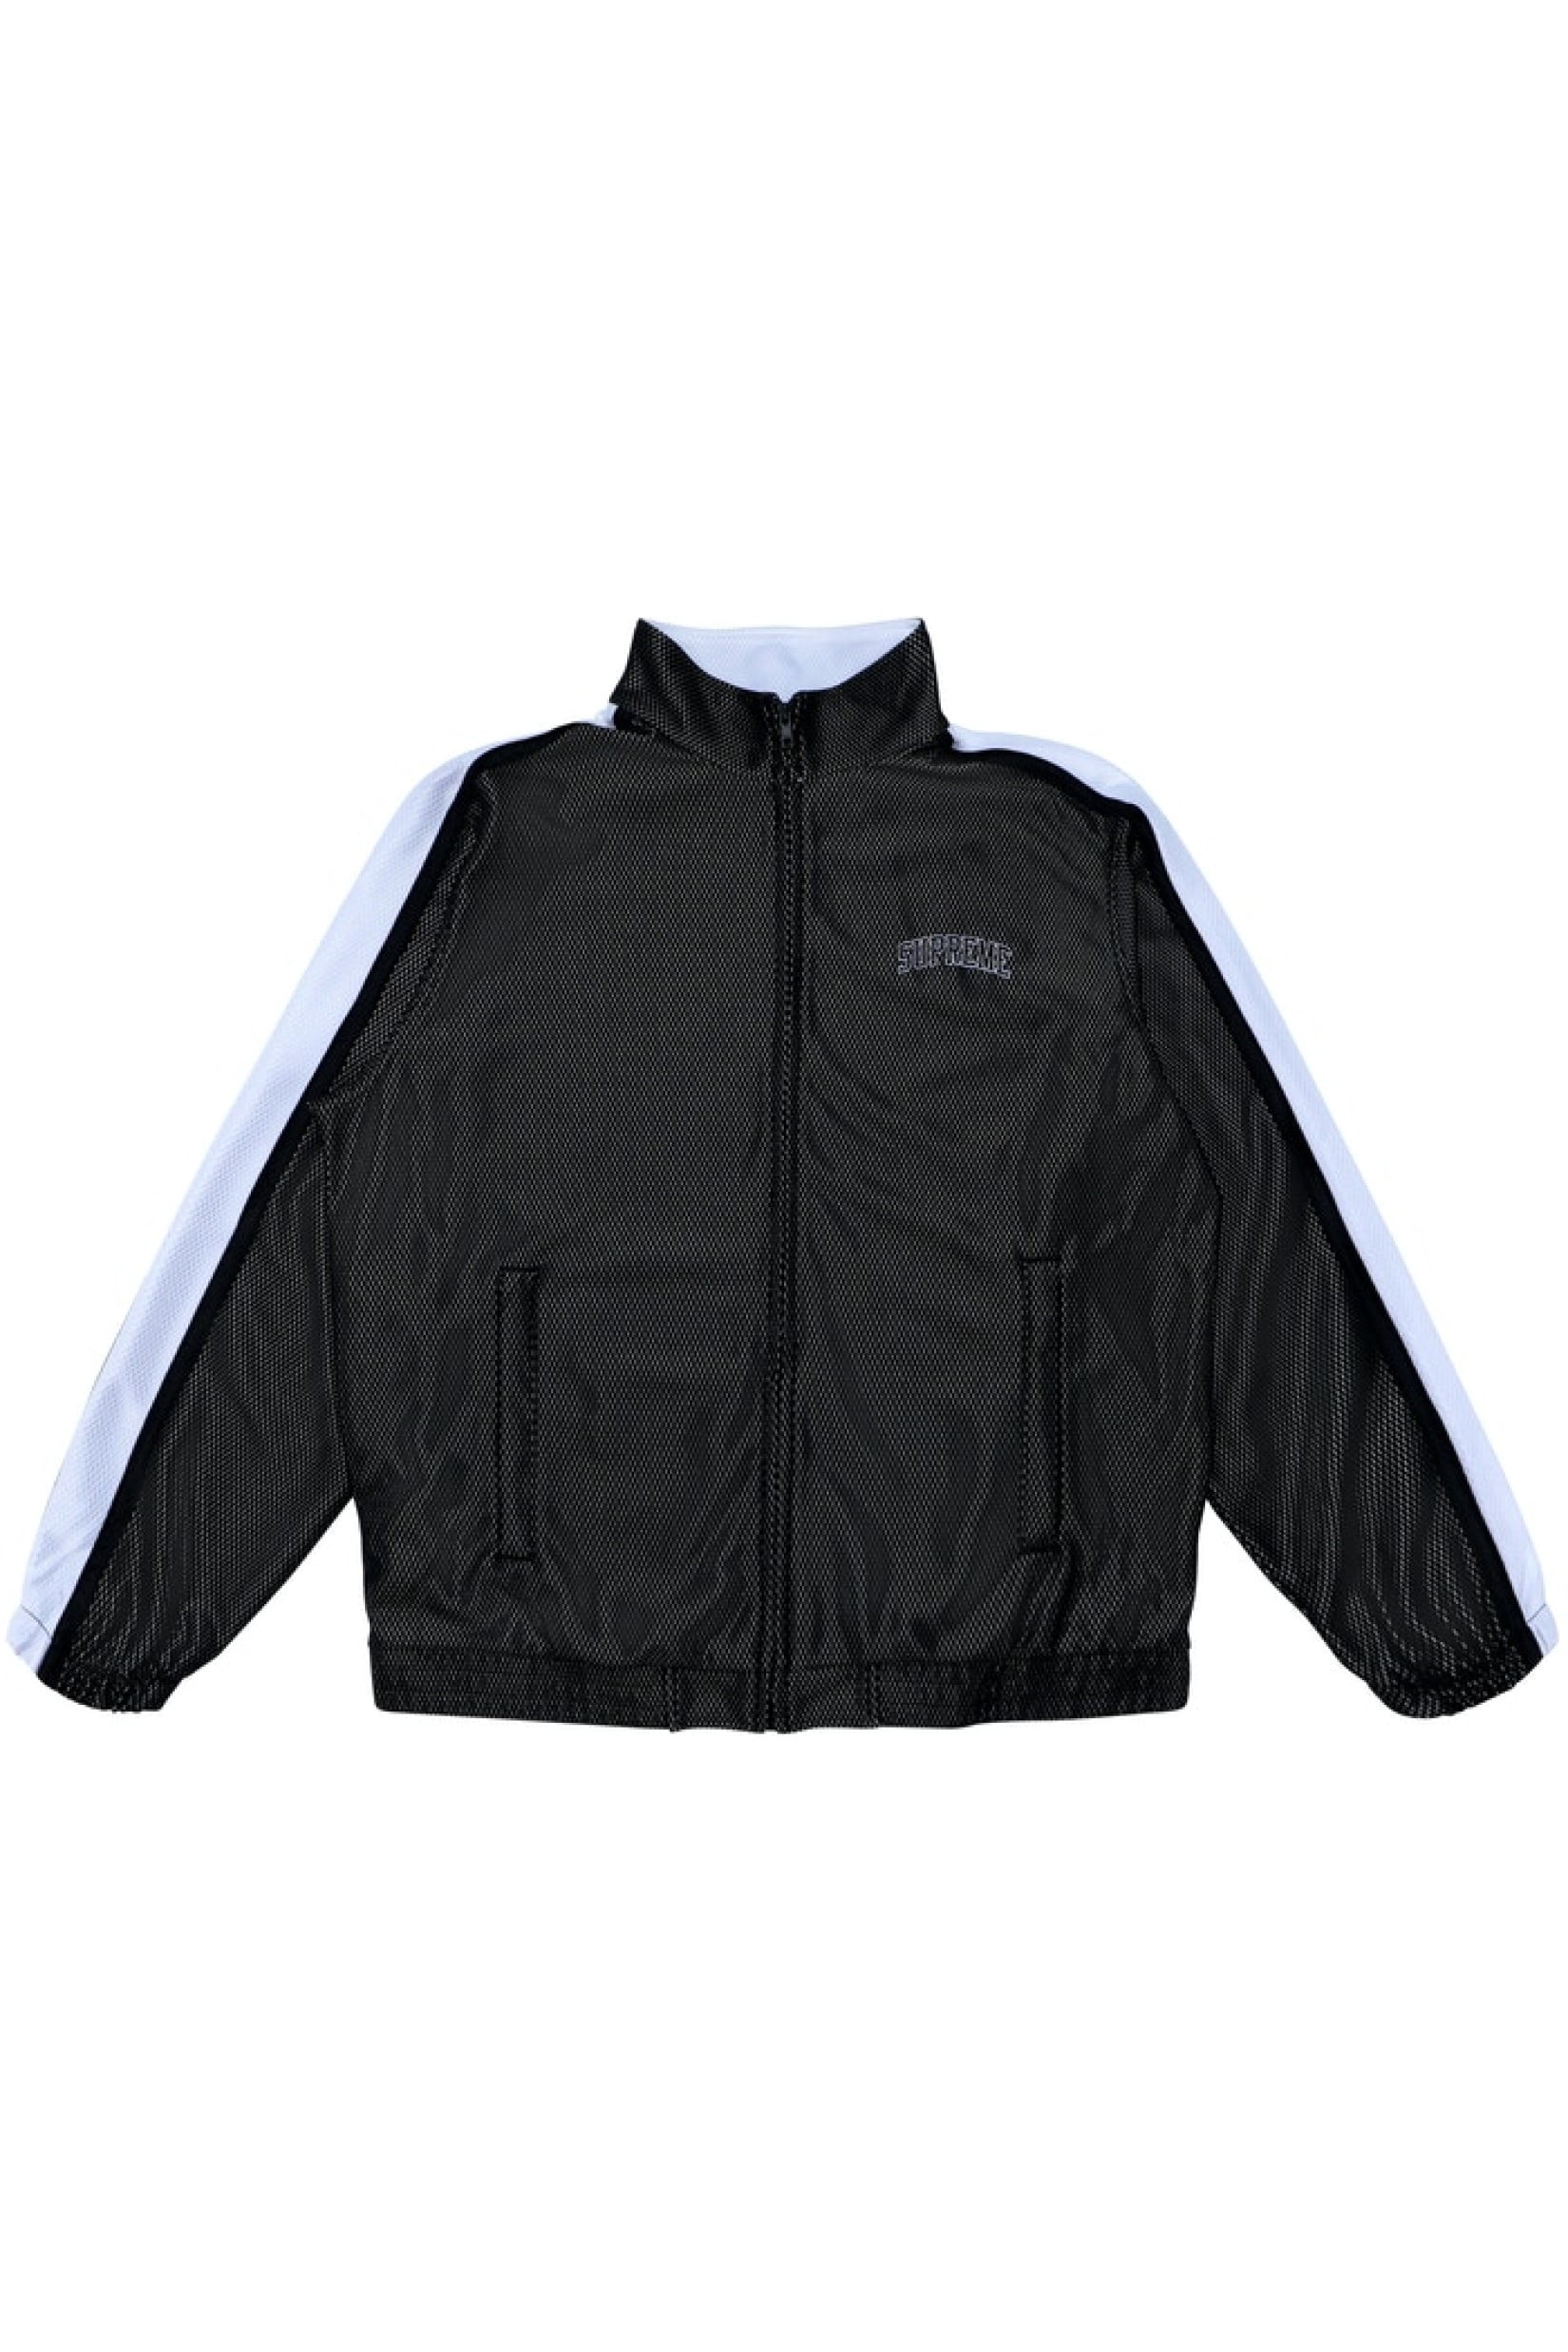 supreme bonded mesh track jacket black